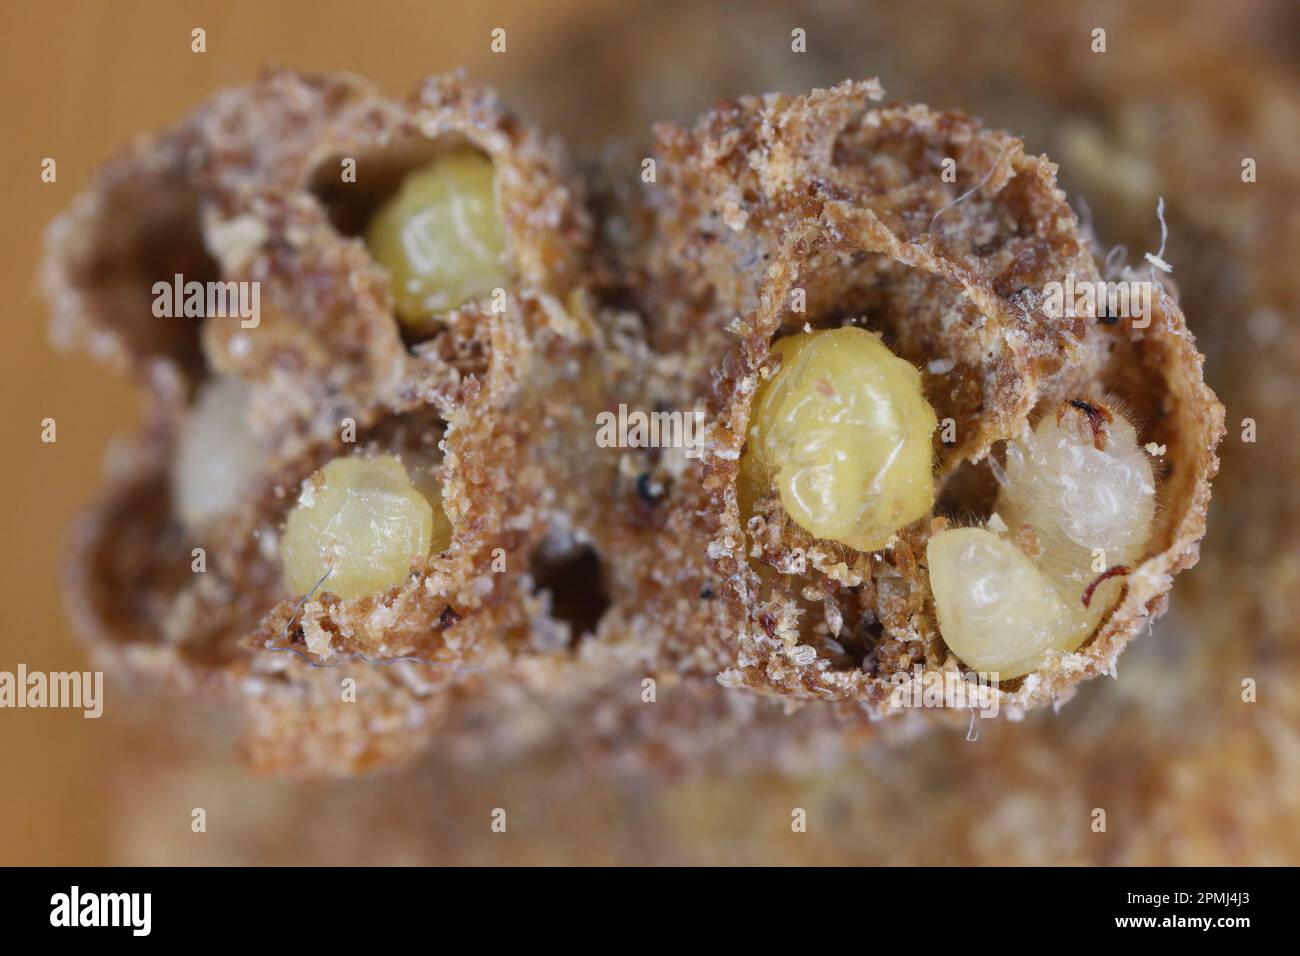 Biscuit, drugstore or bread beetle (Stegobium paniceum) larvae stored product pest in muesli. Stock Photo